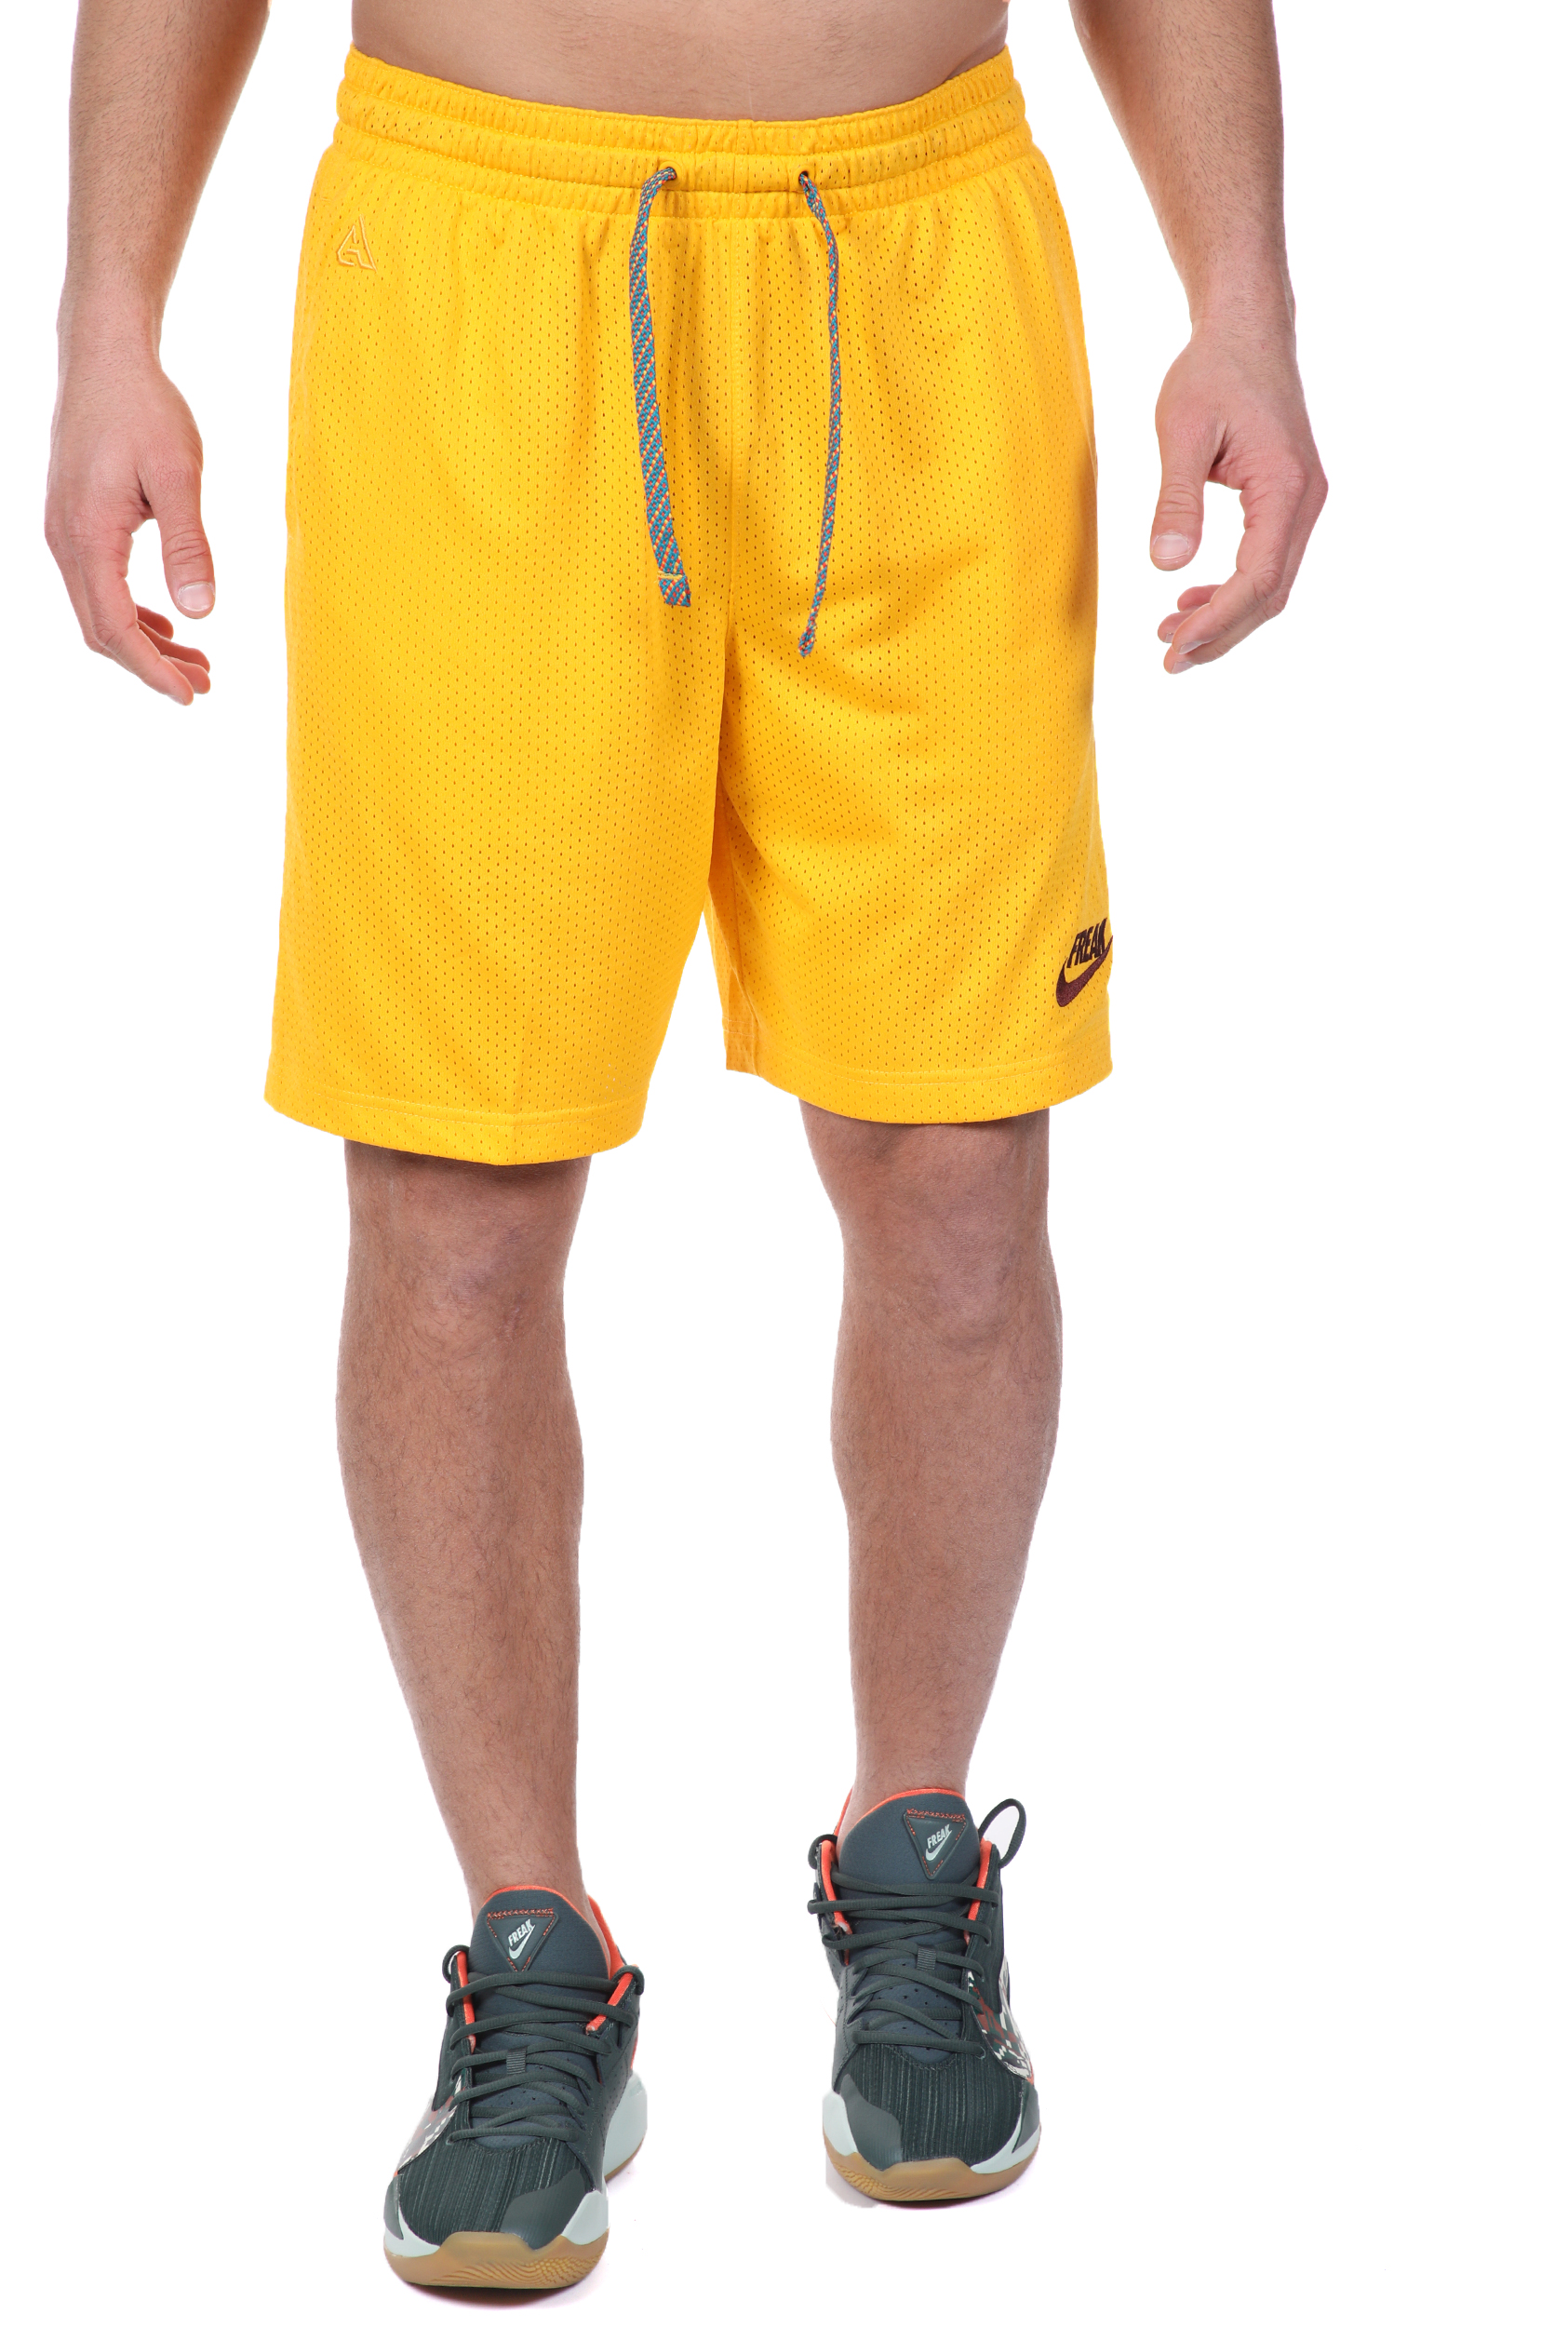 Ανδρικά/Ρούχα/Σορτς-Βερμούδες/Αθλητικά NIKE - Ανδρική βερμούδα NIKE GIANNIS M NK SHORT FREAK κίτρινη